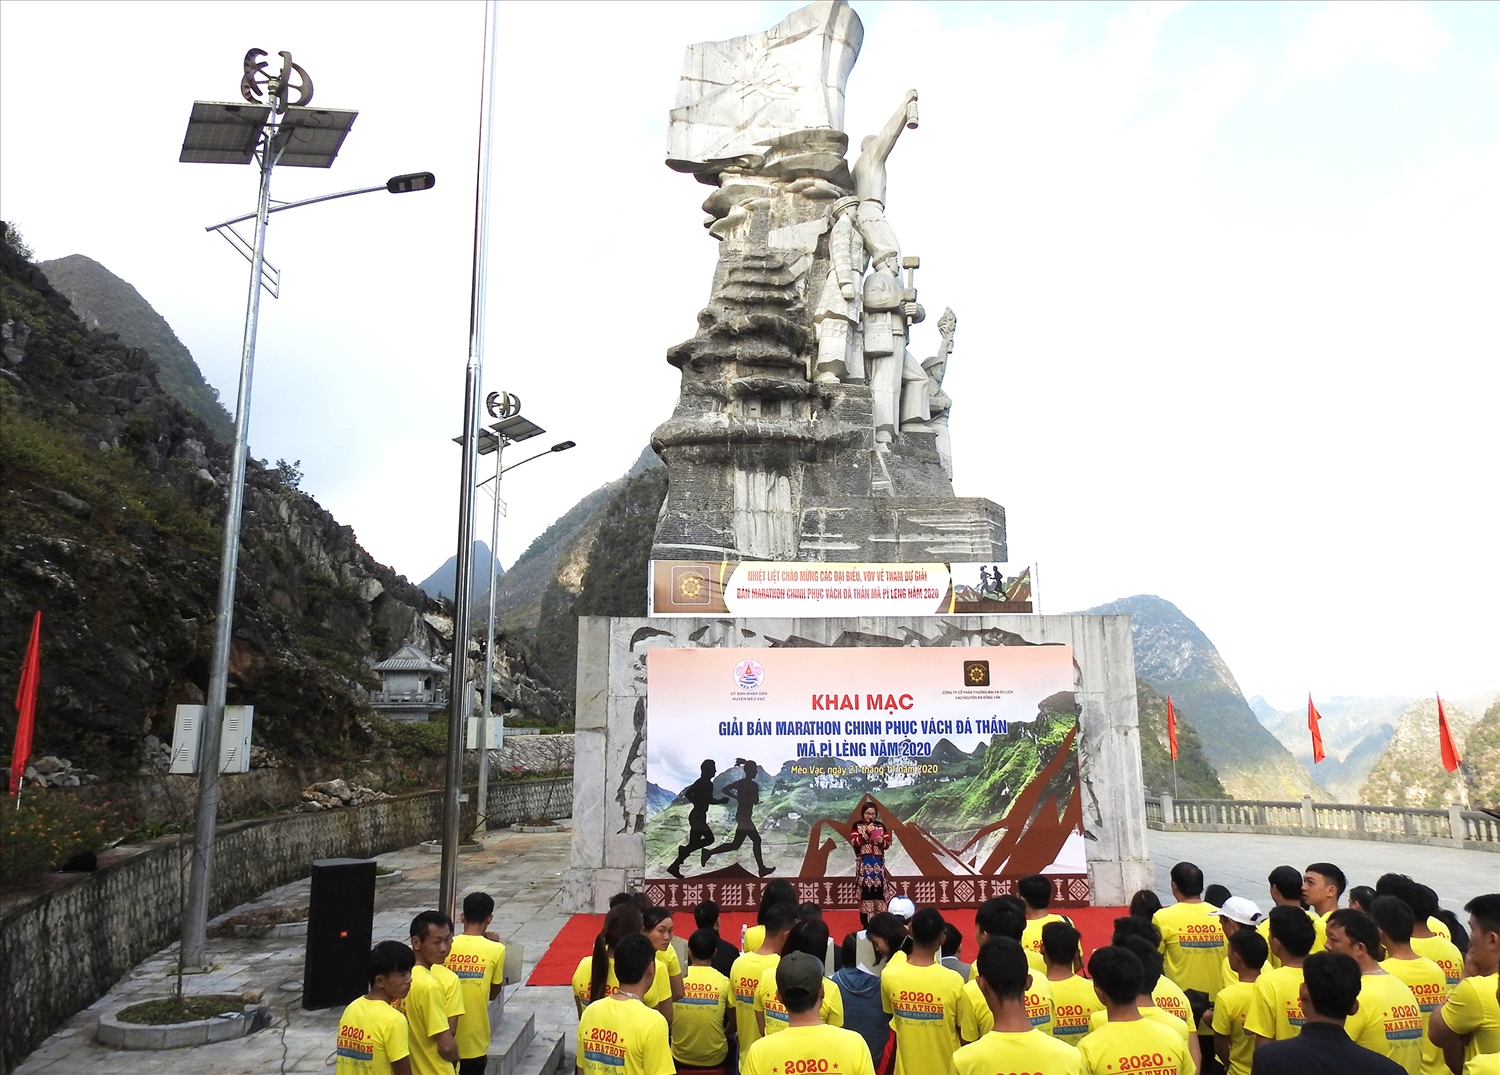 Lễ khai mạc giải bán Marathon chinh phục vách đá thần Mã Pì Lèng năm 2020 tại Sân tượng đài Thanh niên xung phong, xã Pải Lủng, huyện Mèo Vạc (Hà Giang). (Ảnh TL)